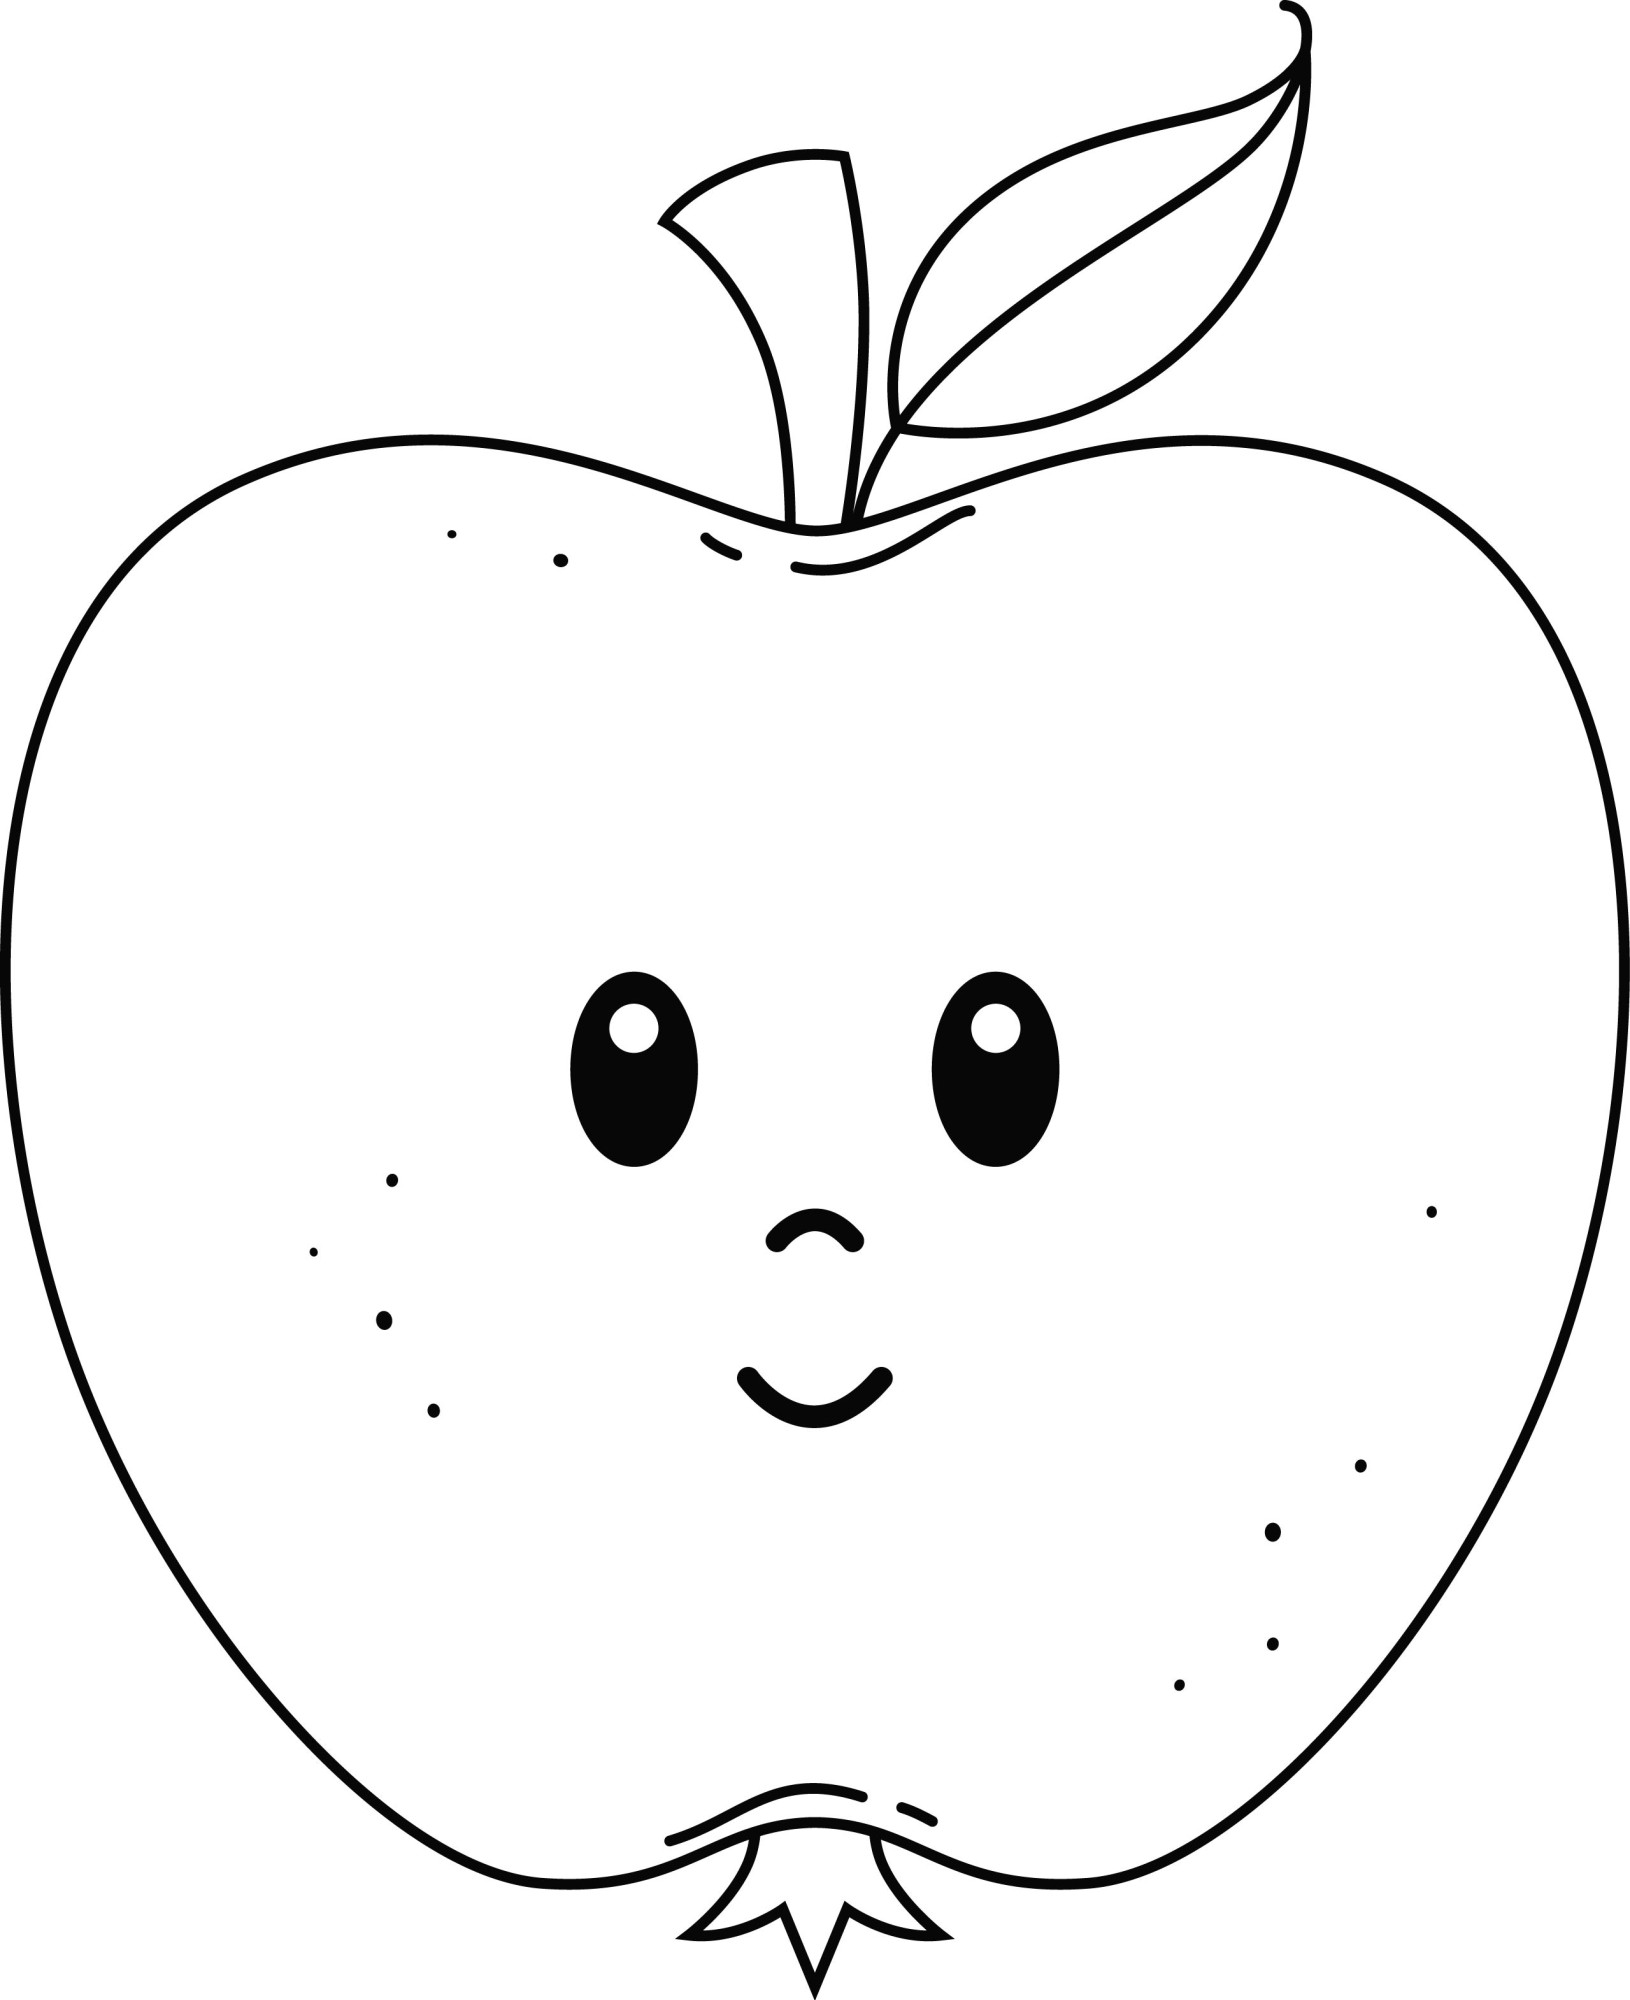 Раскраска для детей: сказочное яблоко с лицом